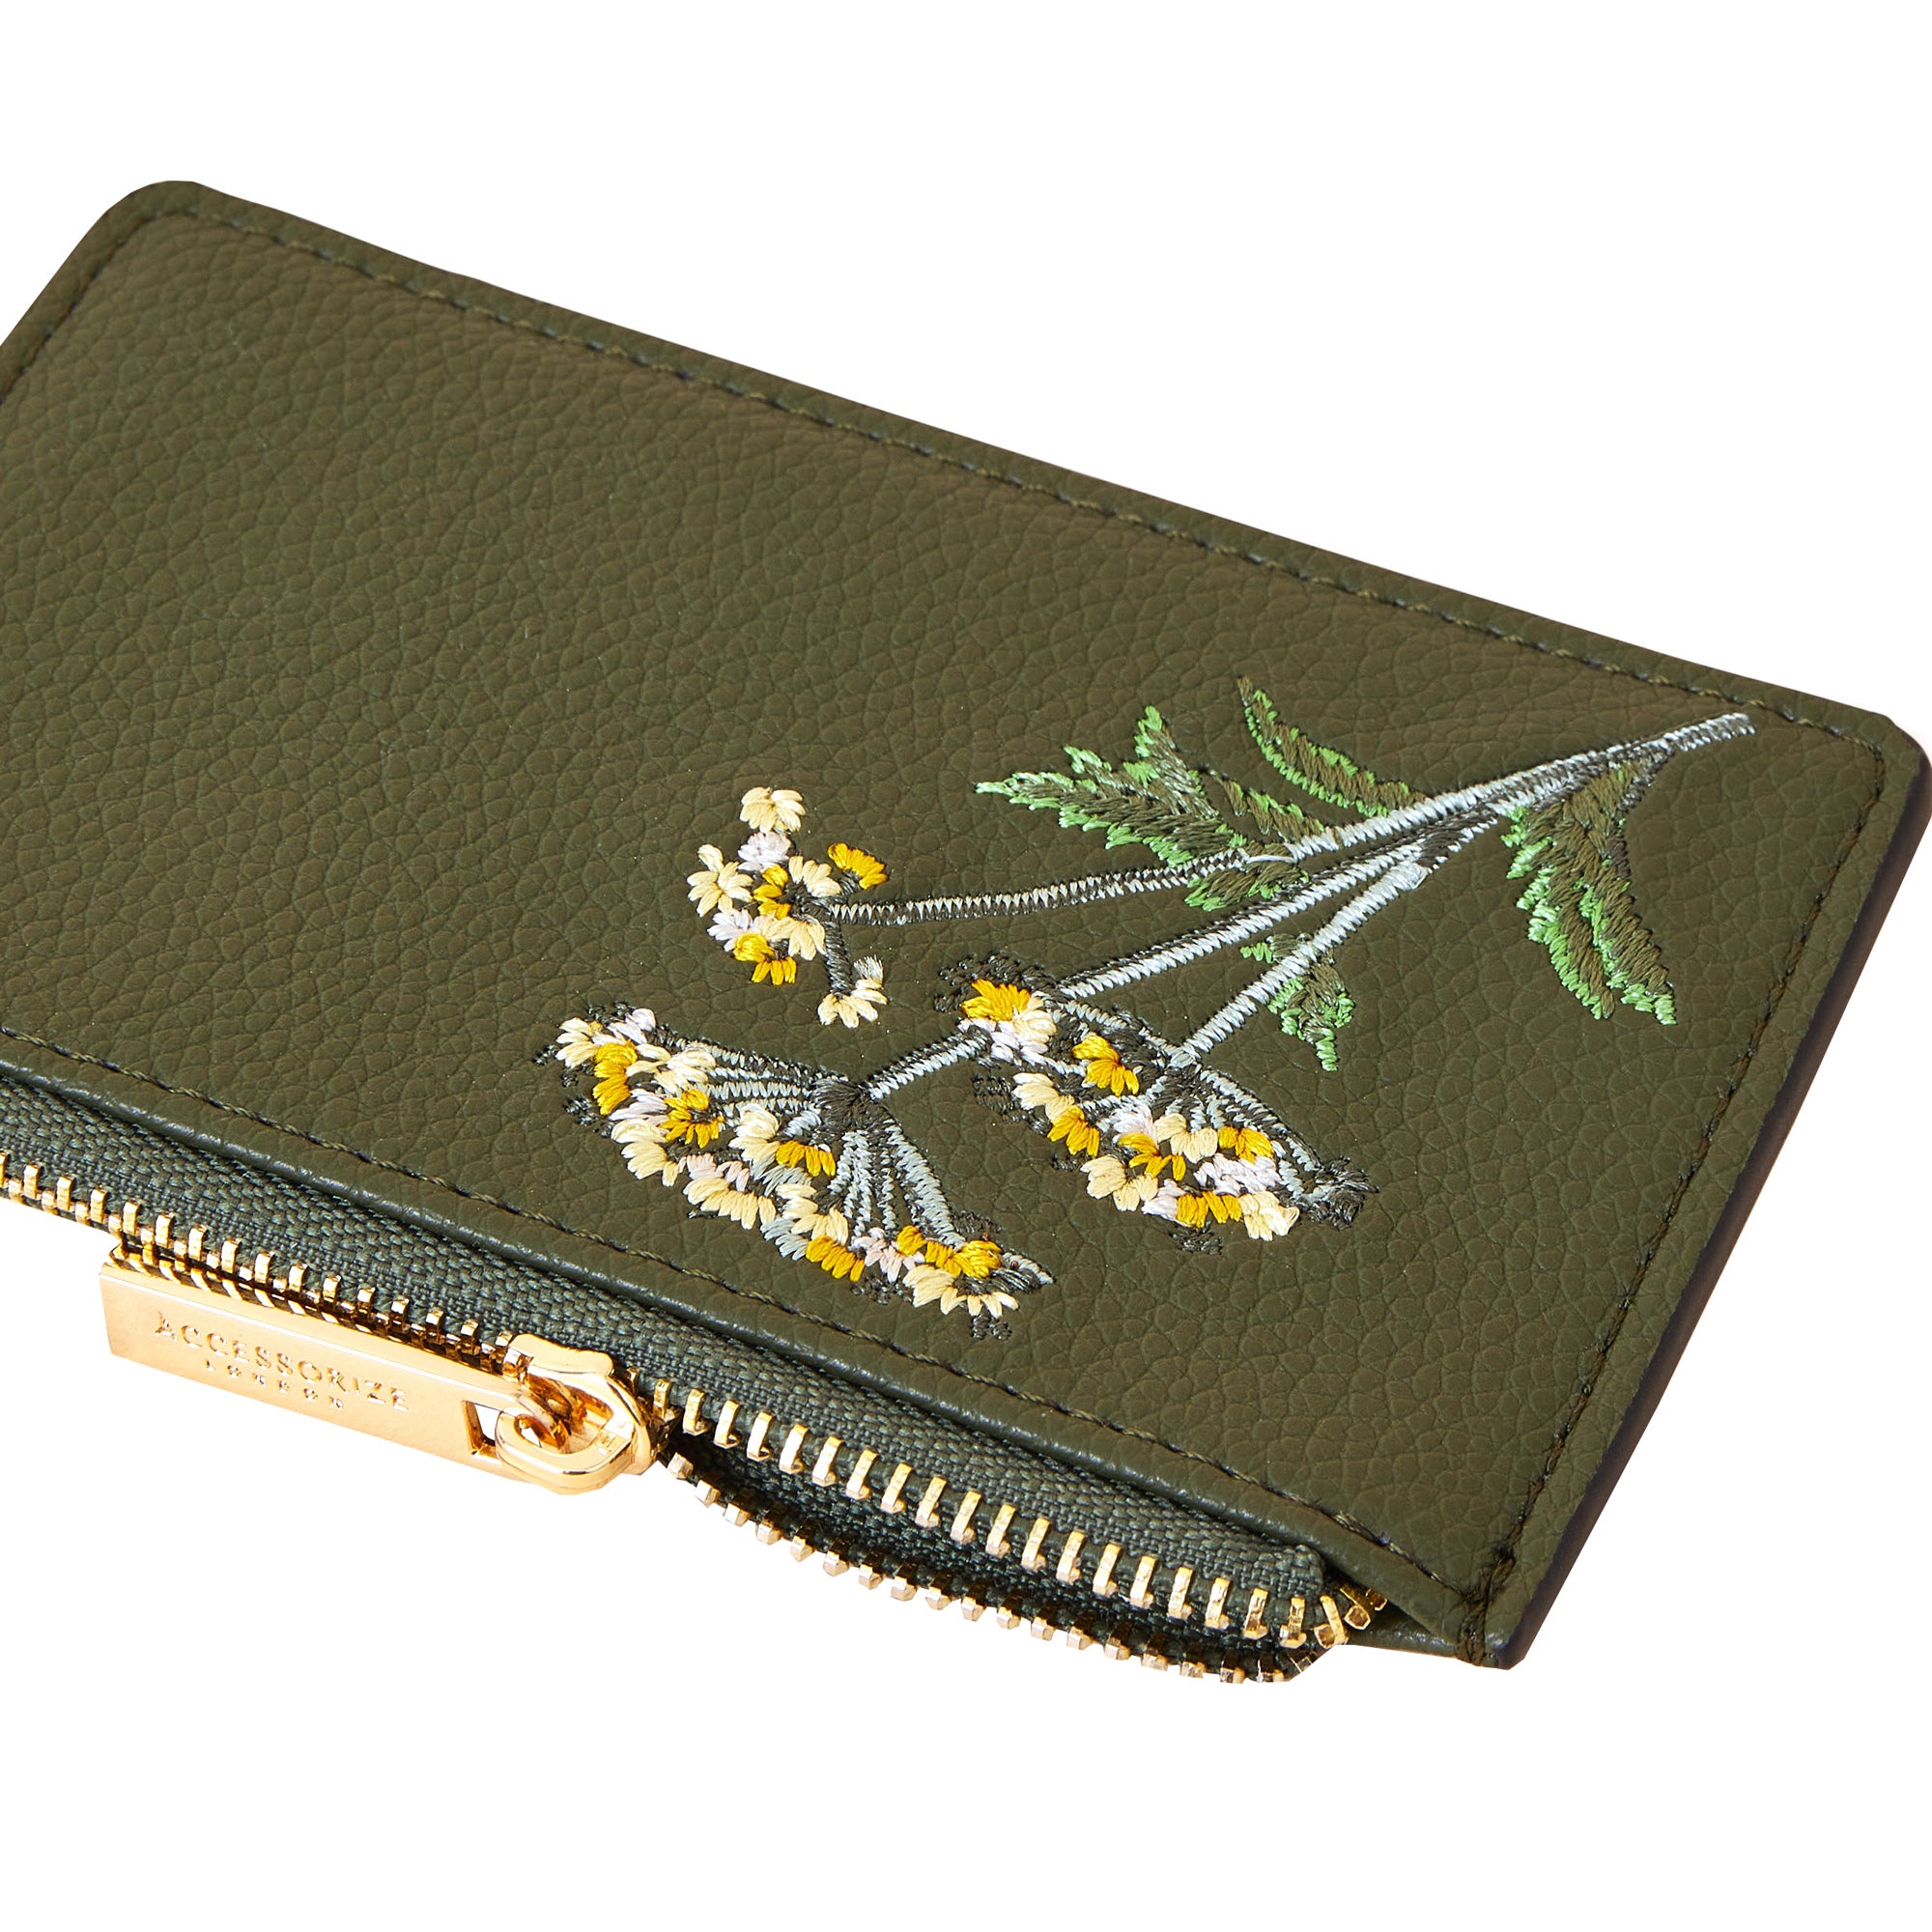 Accessorize London Women'S Faux Leather Khaki Faux Croc Zip Cardholder